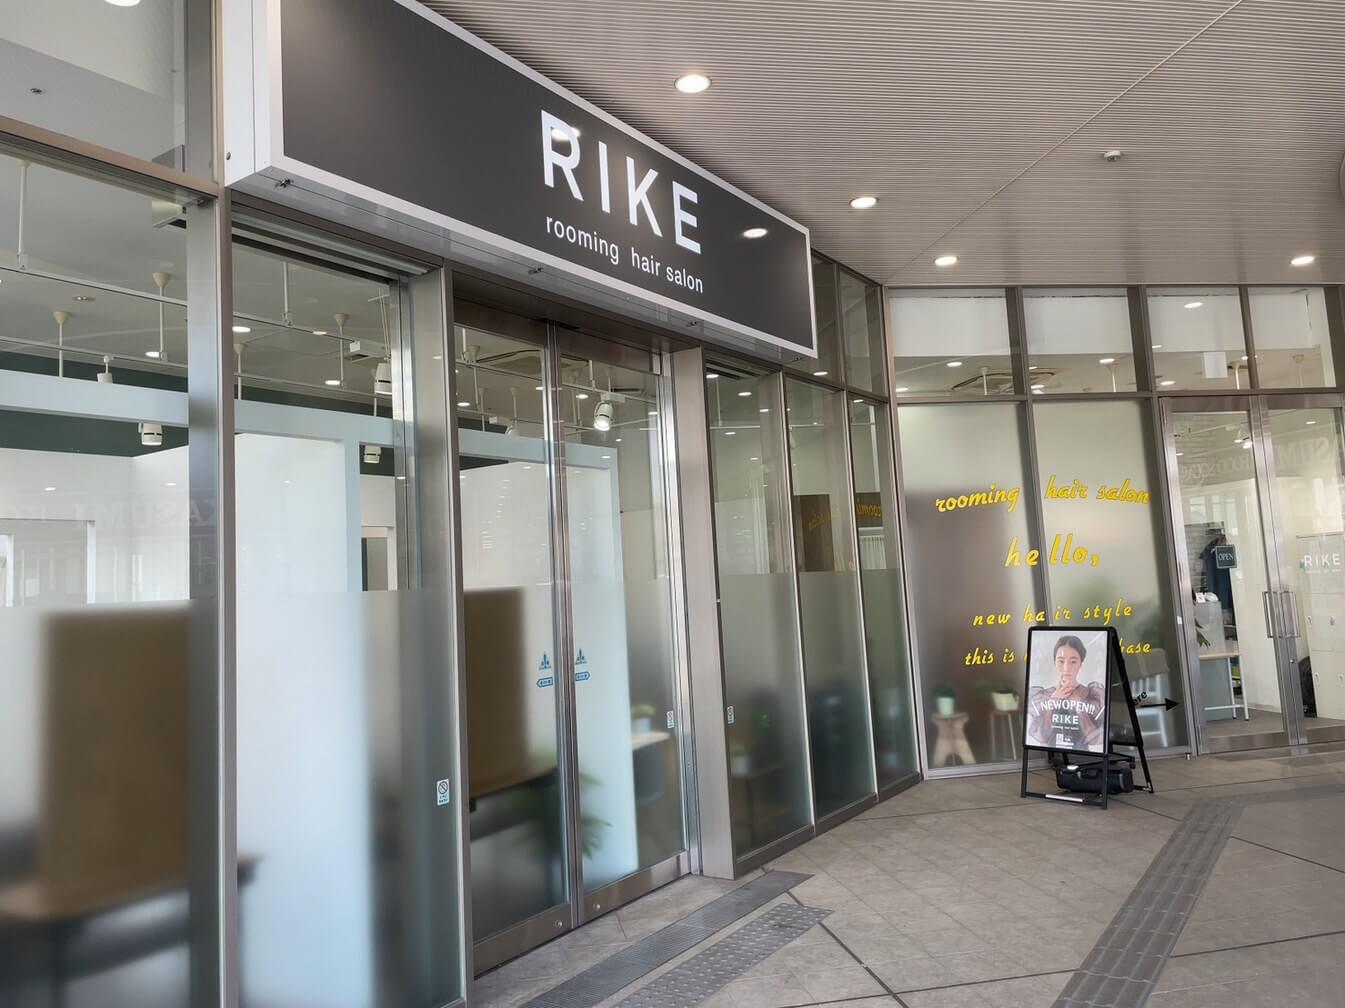 越谷駅前のツインシティ内にRIKE(ライク)という美容室がオープンしていました【がやてっく開店】